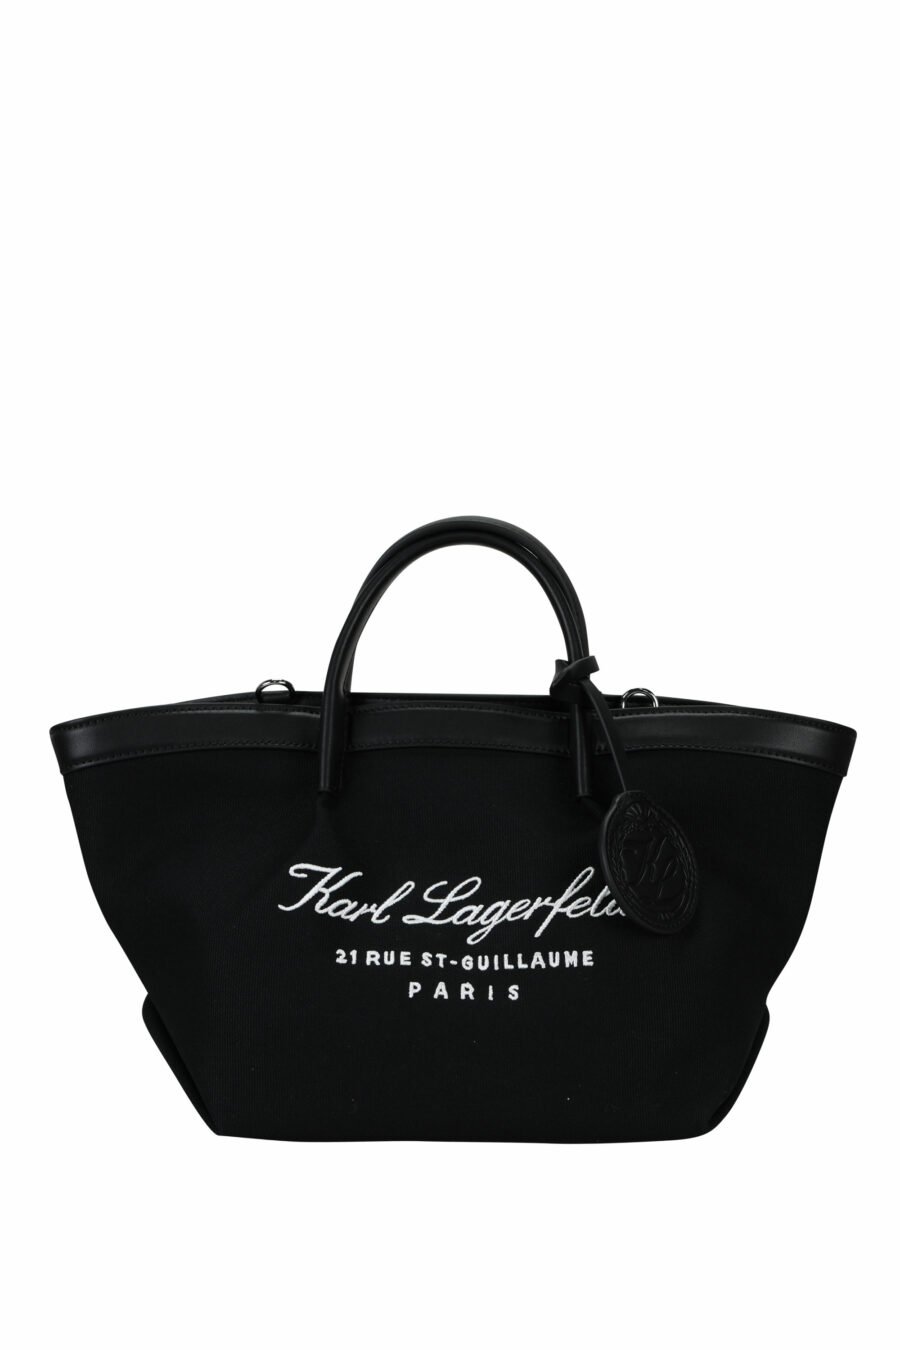 Bolso bandolera negro con logo firma bordado - 8720744816560